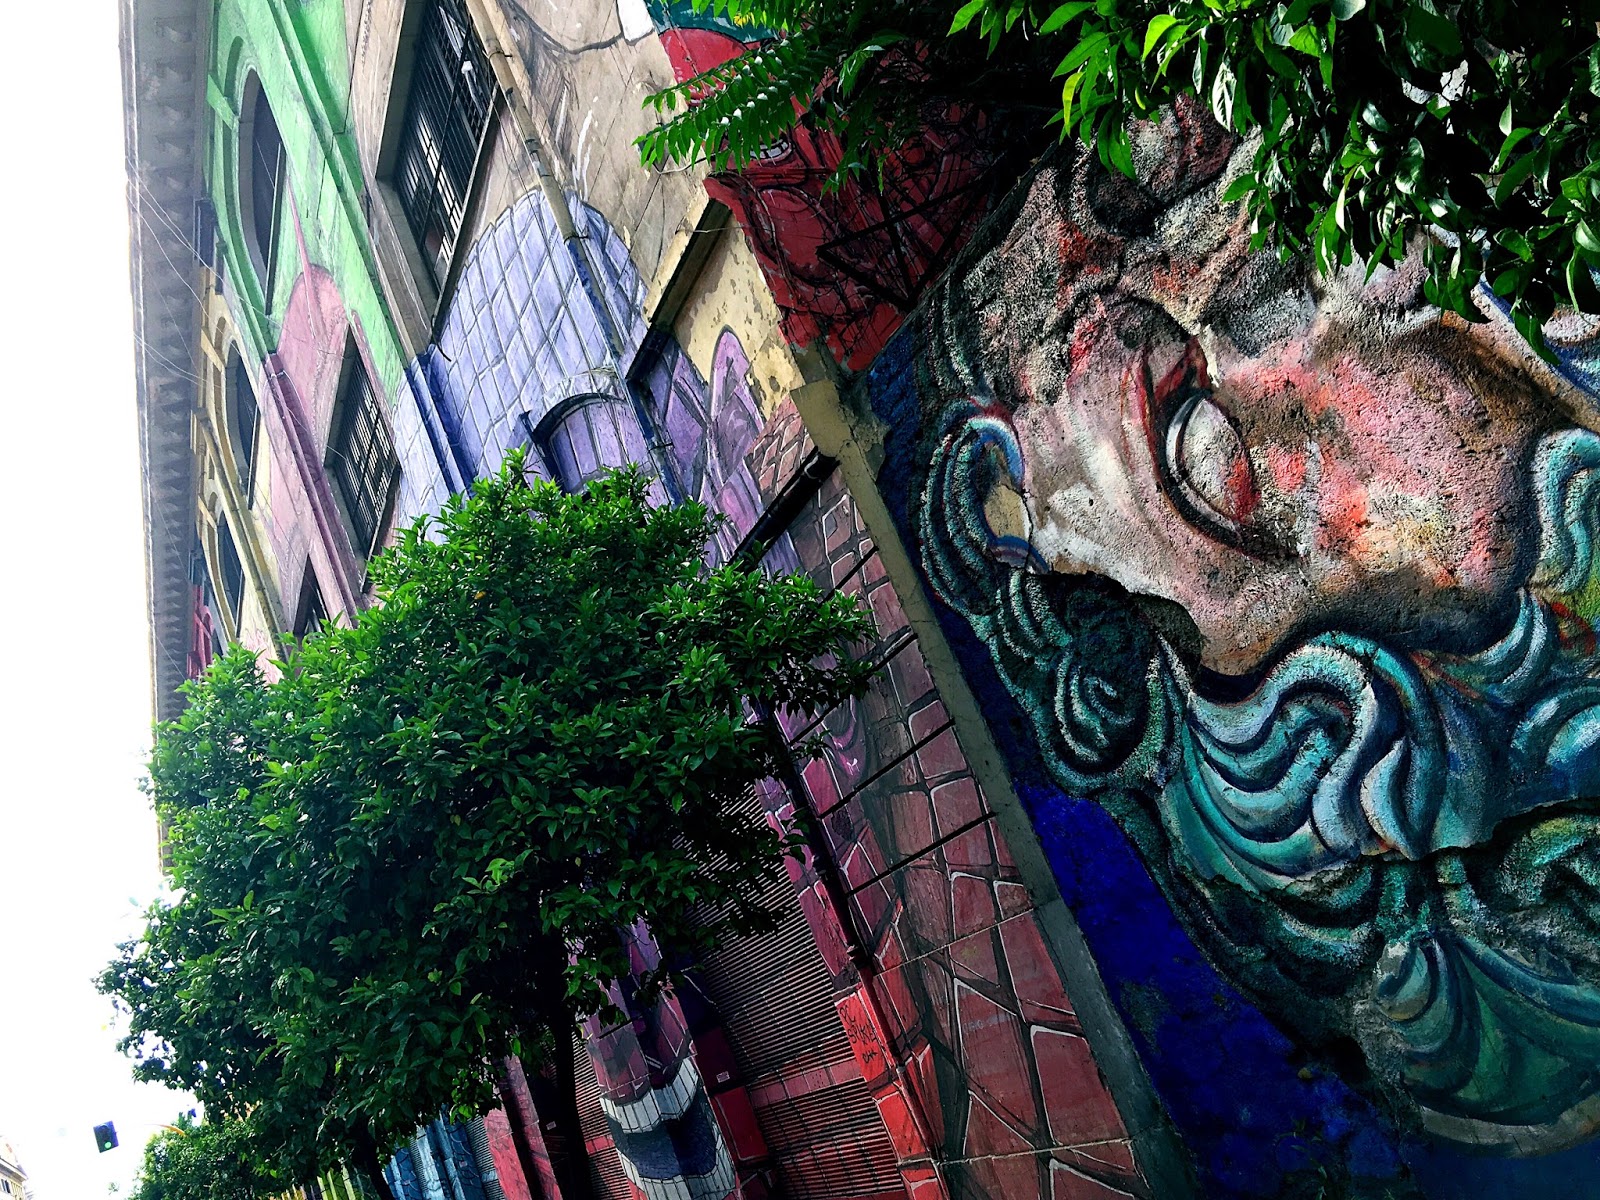 Nancy And Julianne S Travels Street Art Or Graffiti Eyes Open To